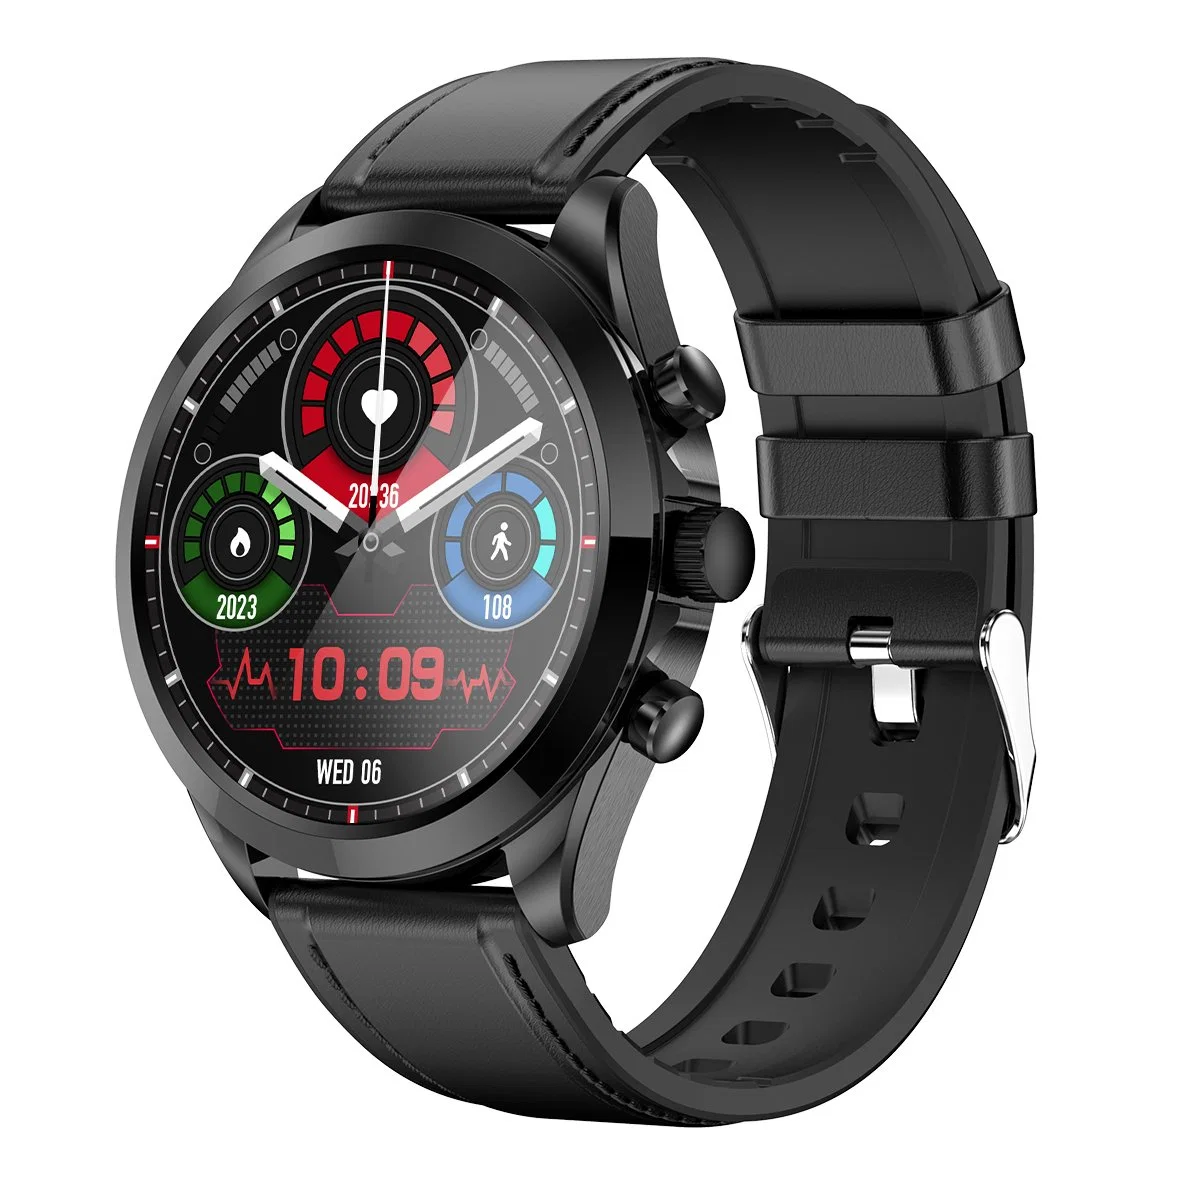 Et440 Bluetooth вызов Smart Watch ЭКГ HRV монитор температуры тела Голосовое устройство Фитнес браслет, кожаный ремешок - черный